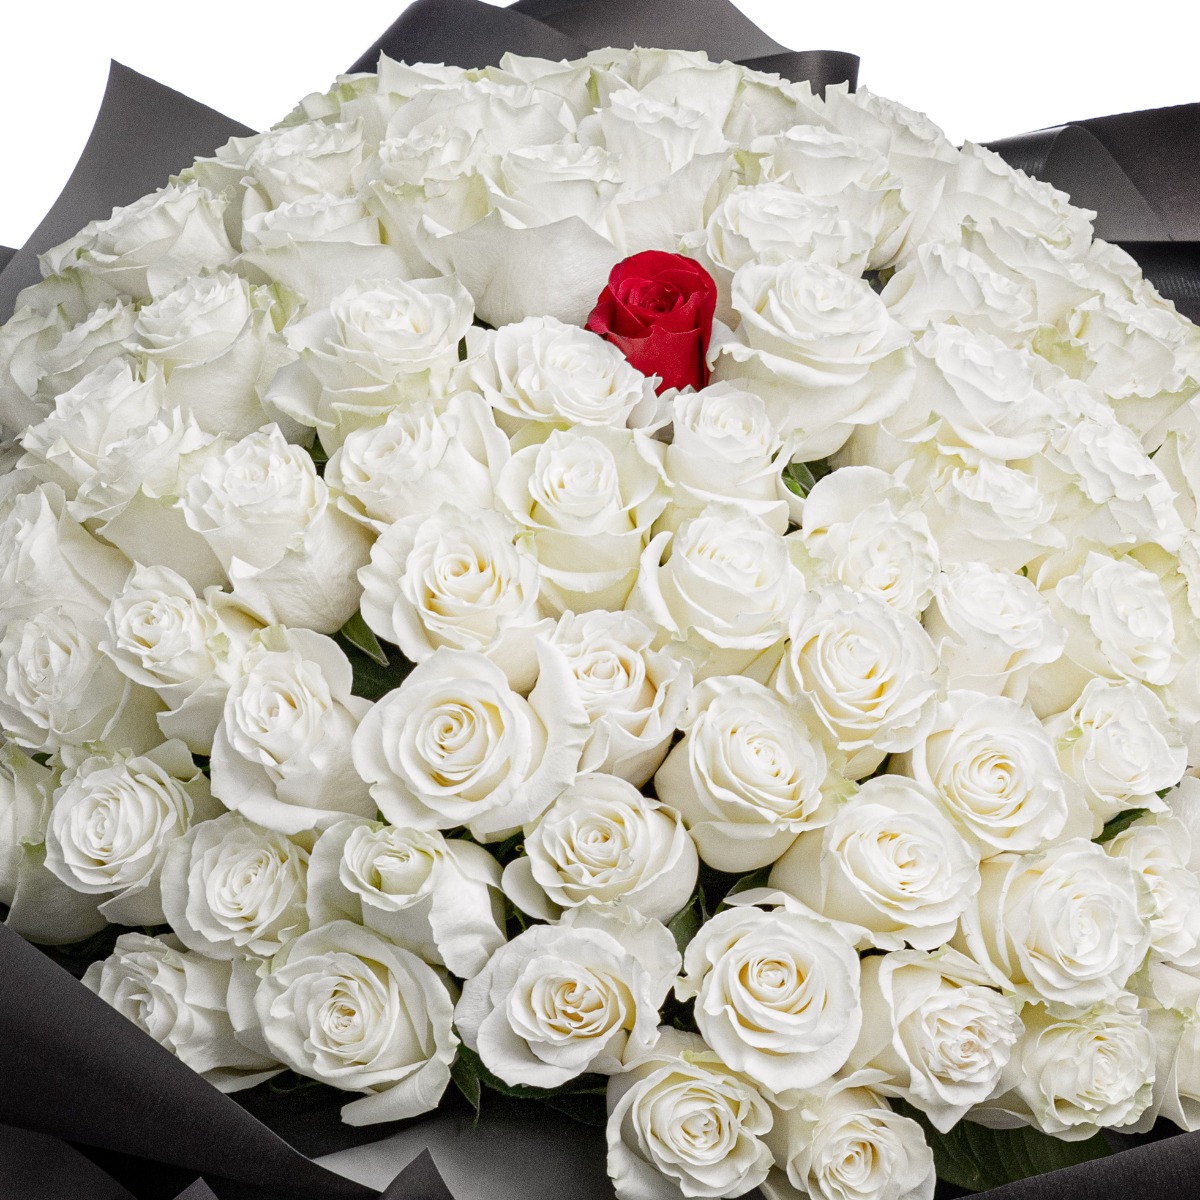 Buchet 100 trandafiri albi si unul rosu